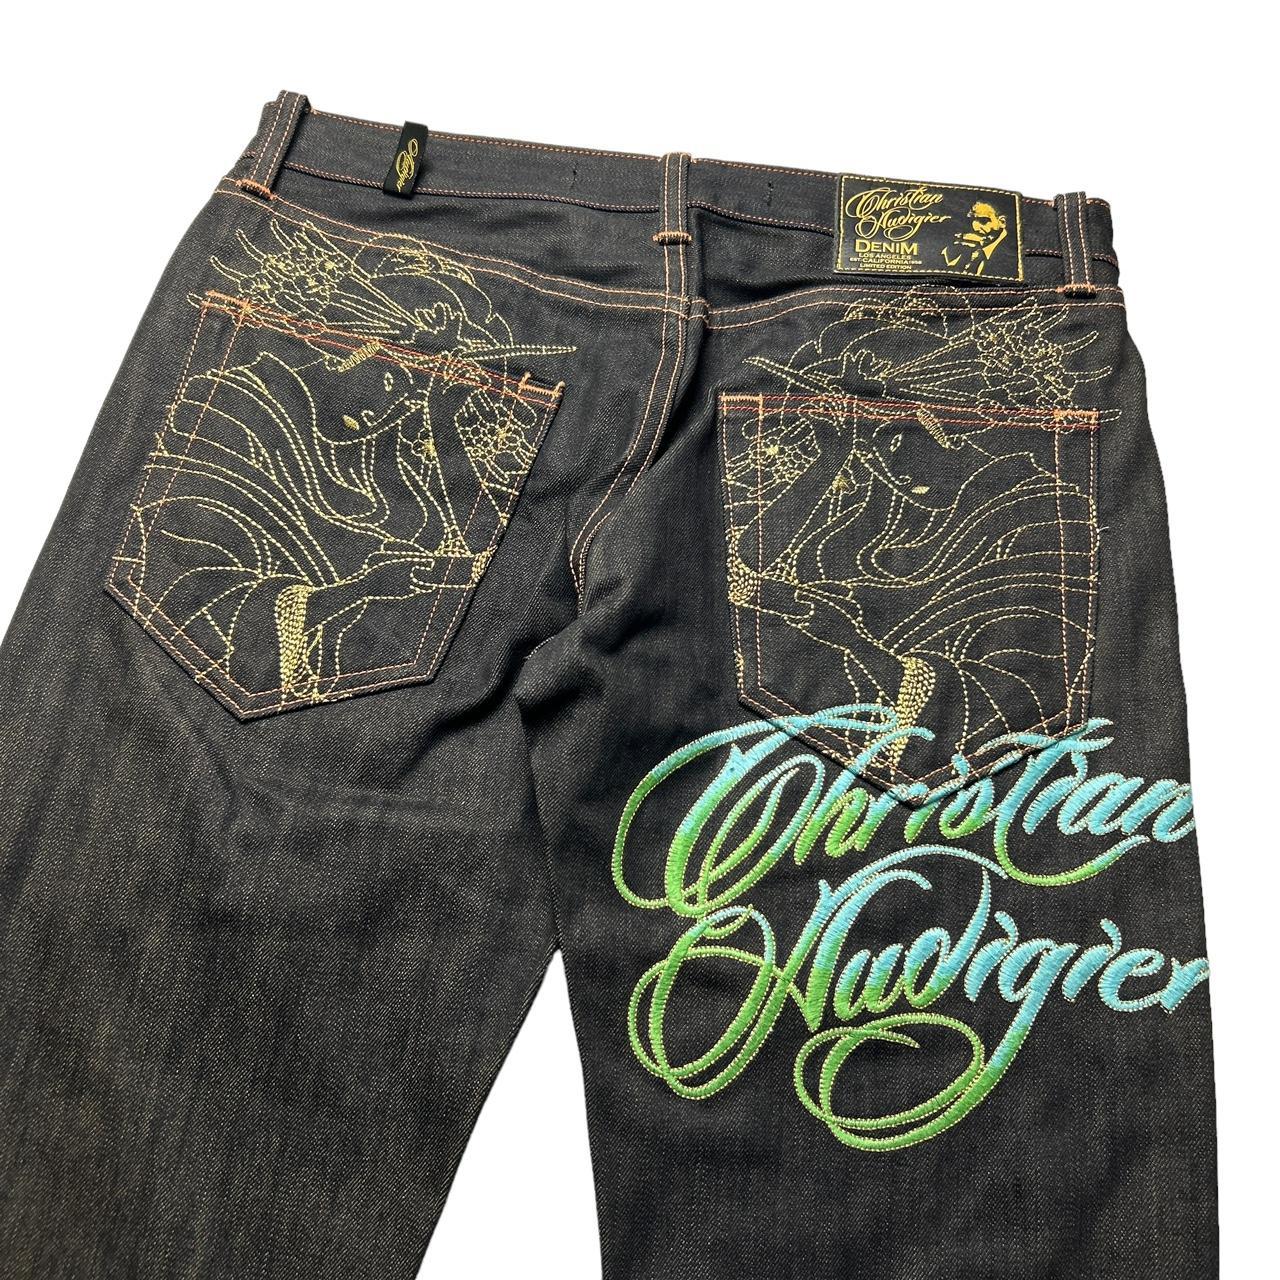 Christian Audigier Jeans (32")